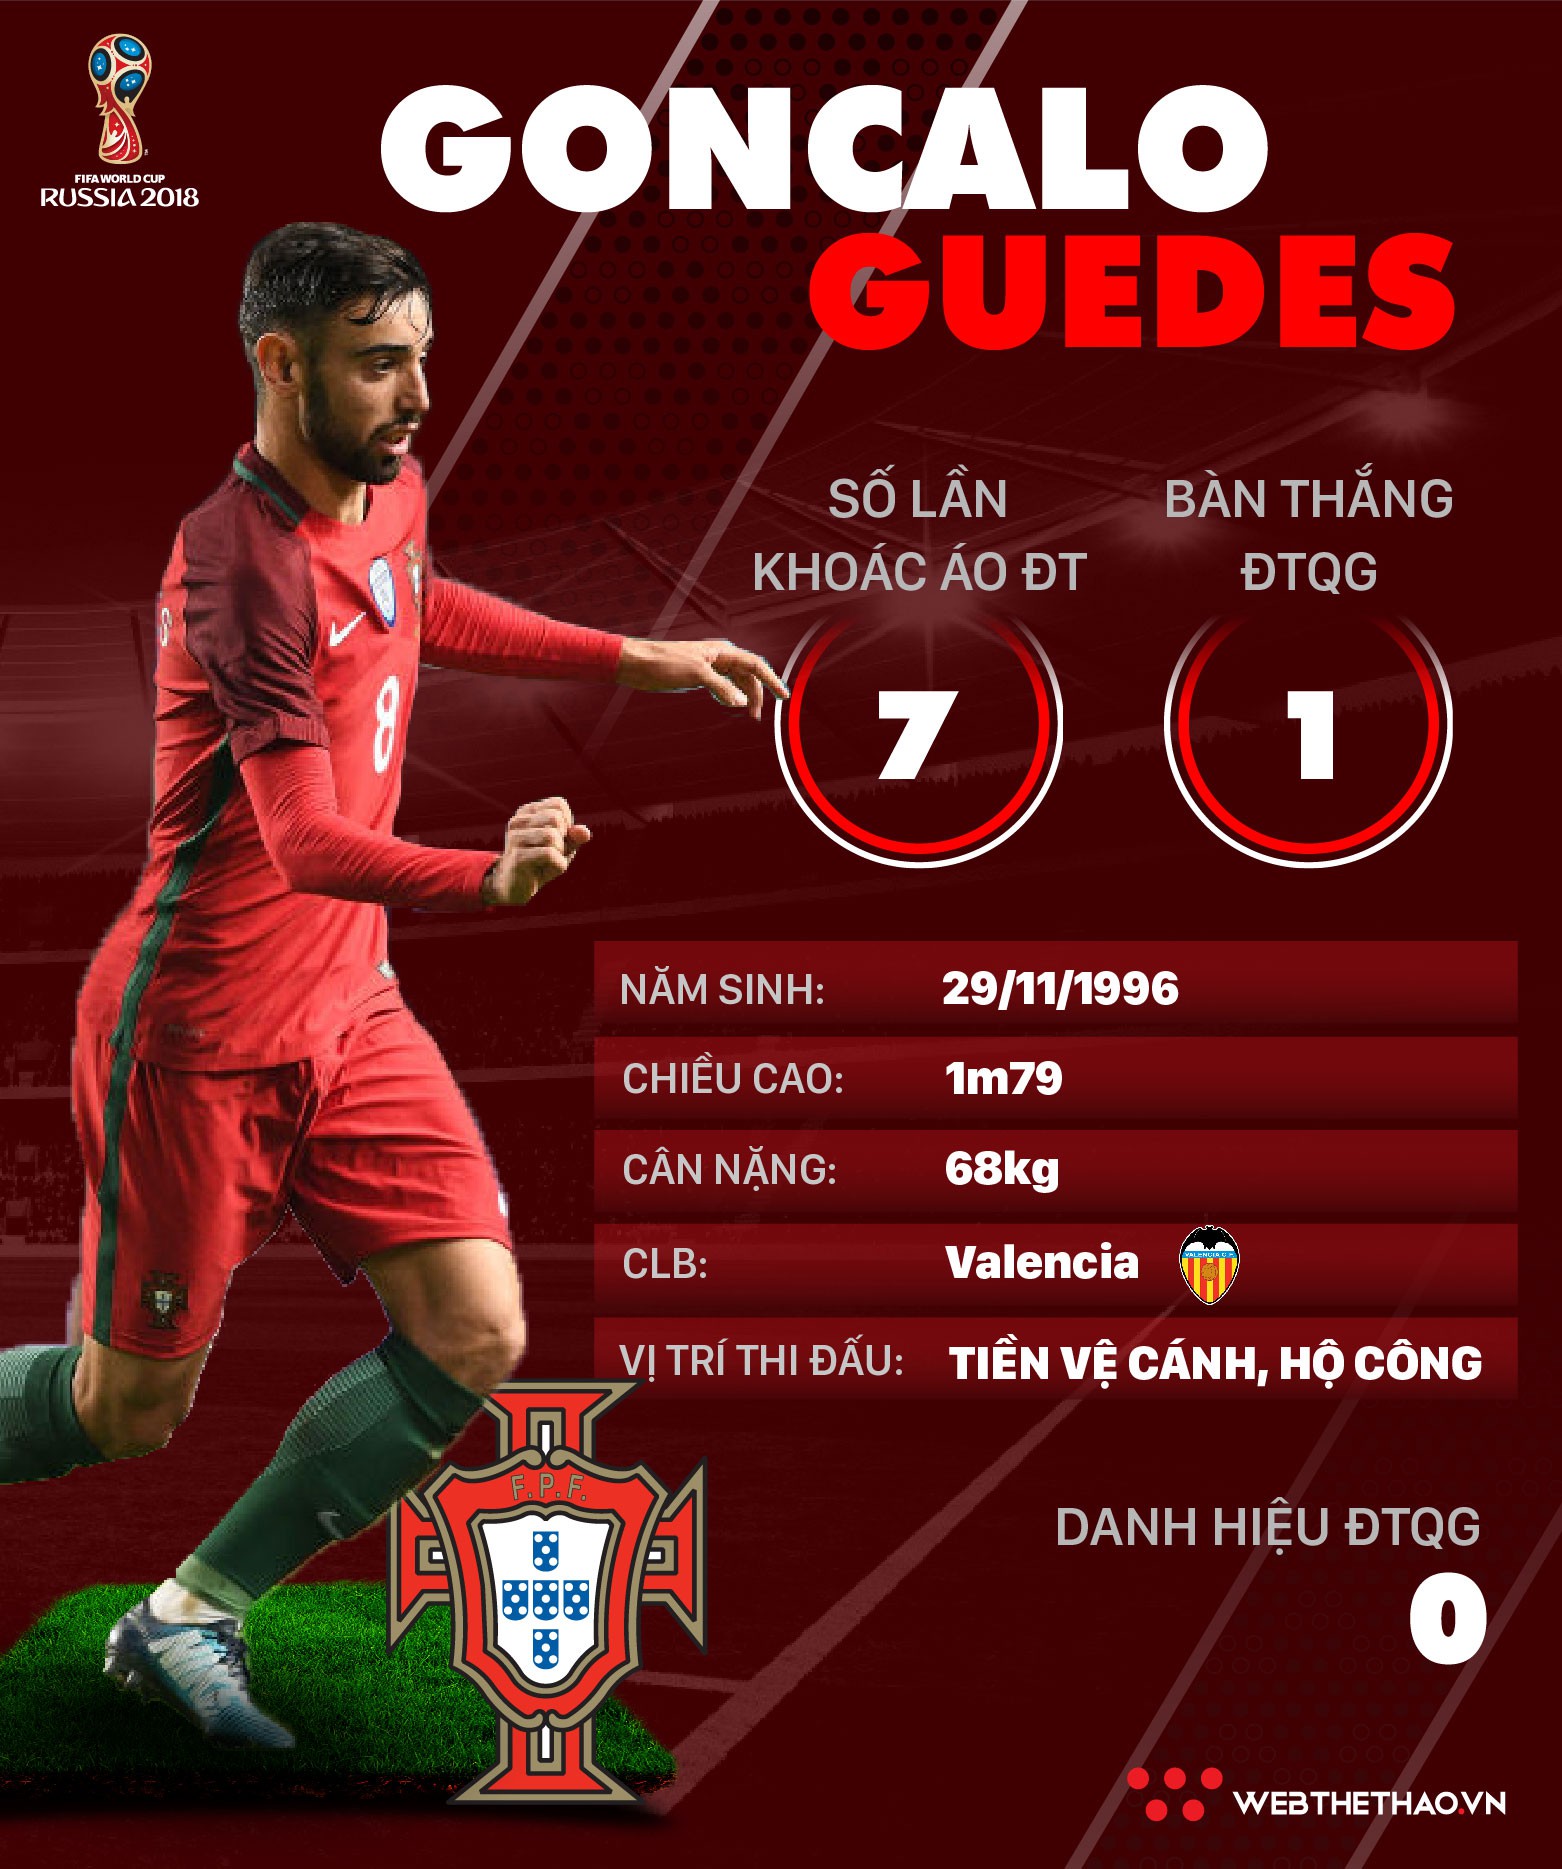 Thông tin cầu thủ Goncalo Guedes của ĐT Bồ Đào Nha dự World Cup 2018 - Ảnh 1.